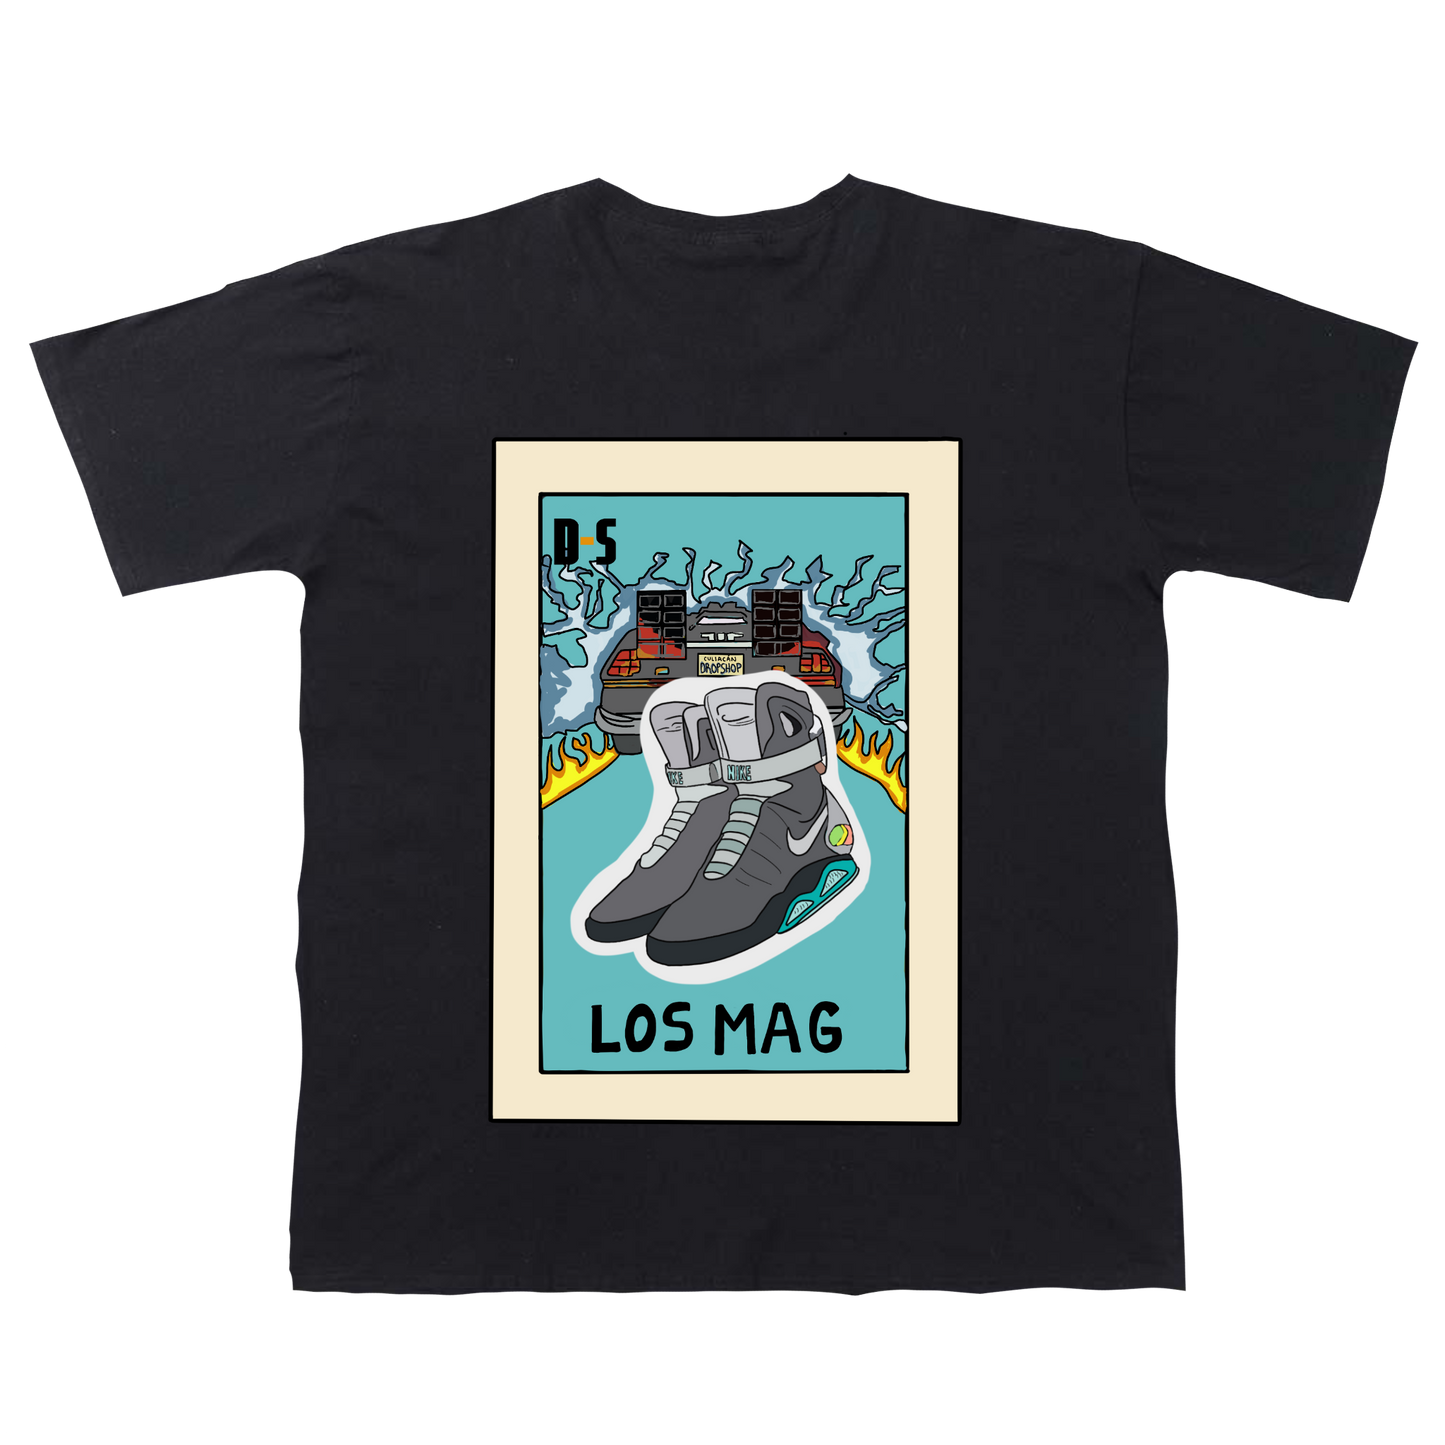 "Los Mag" T-shirt